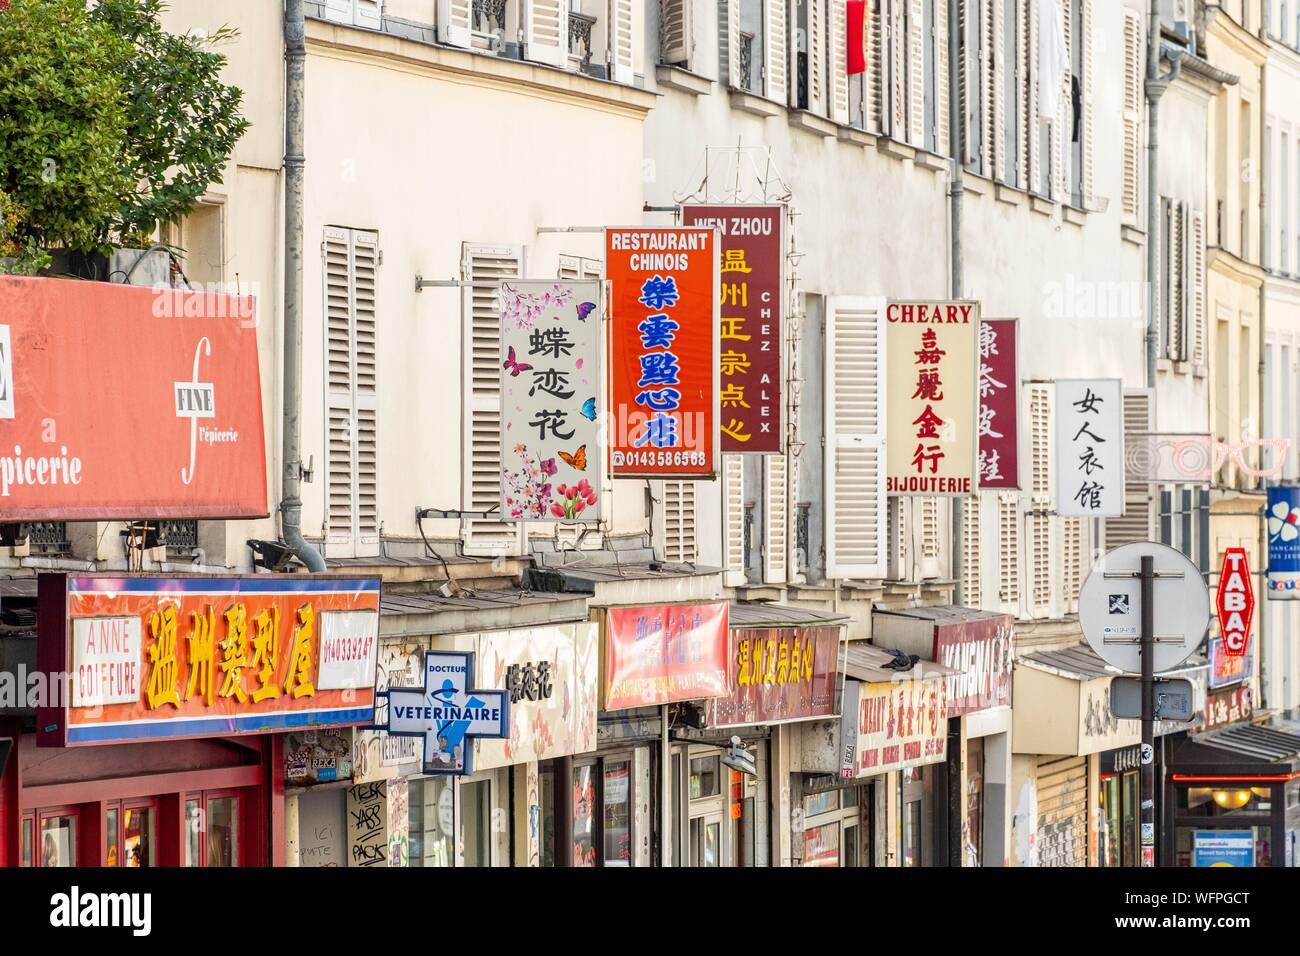 France Paris Chinatown Restaurant Banque d'image et photos - Alamy